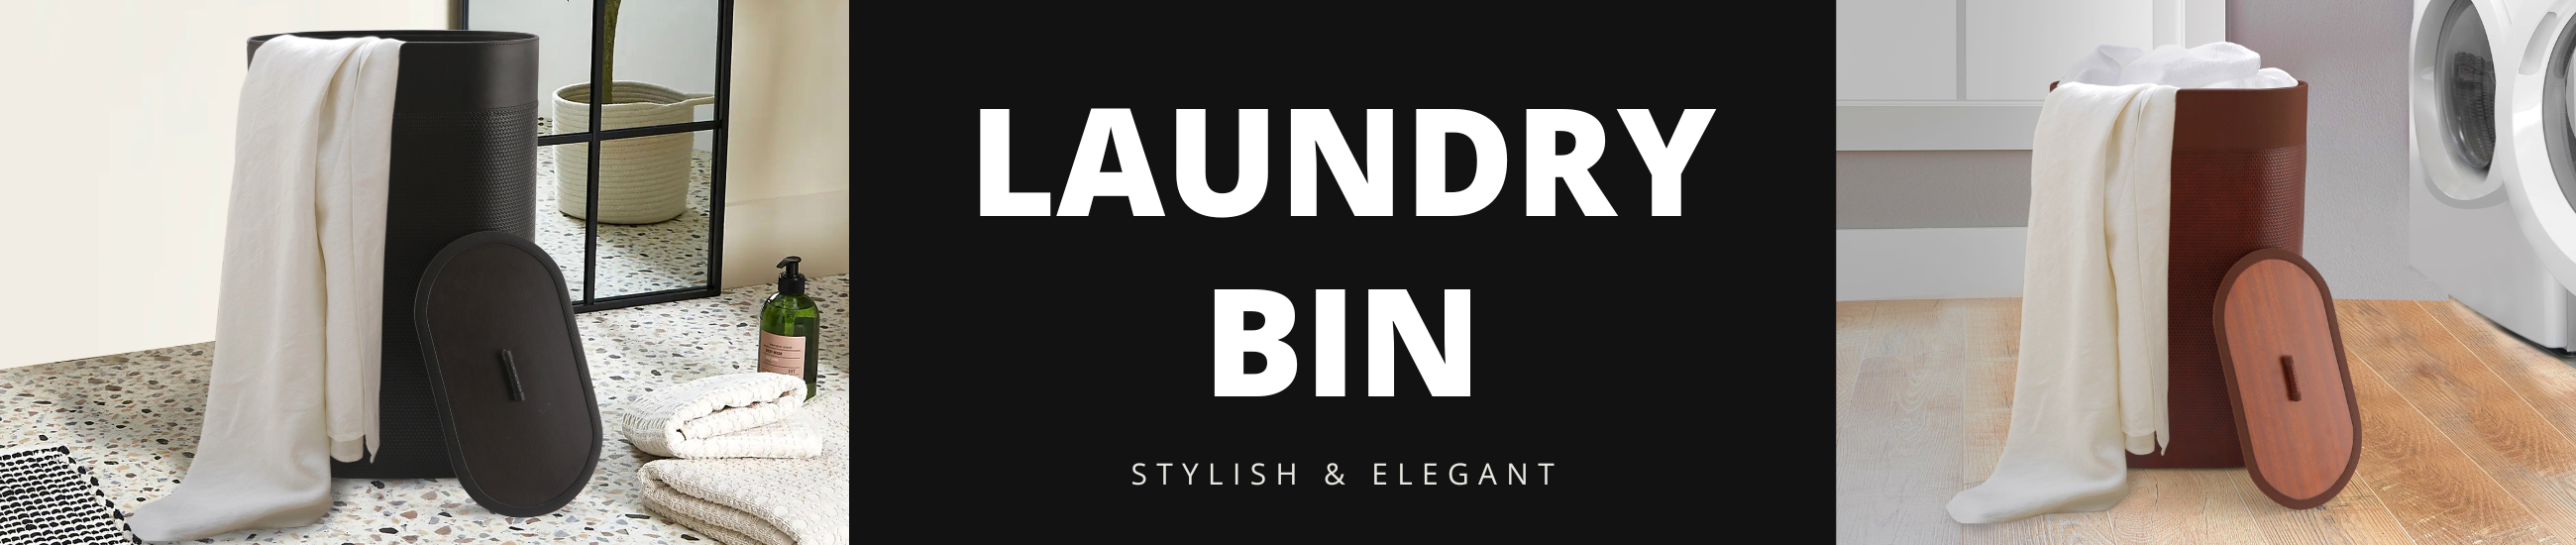 Laundry Bin